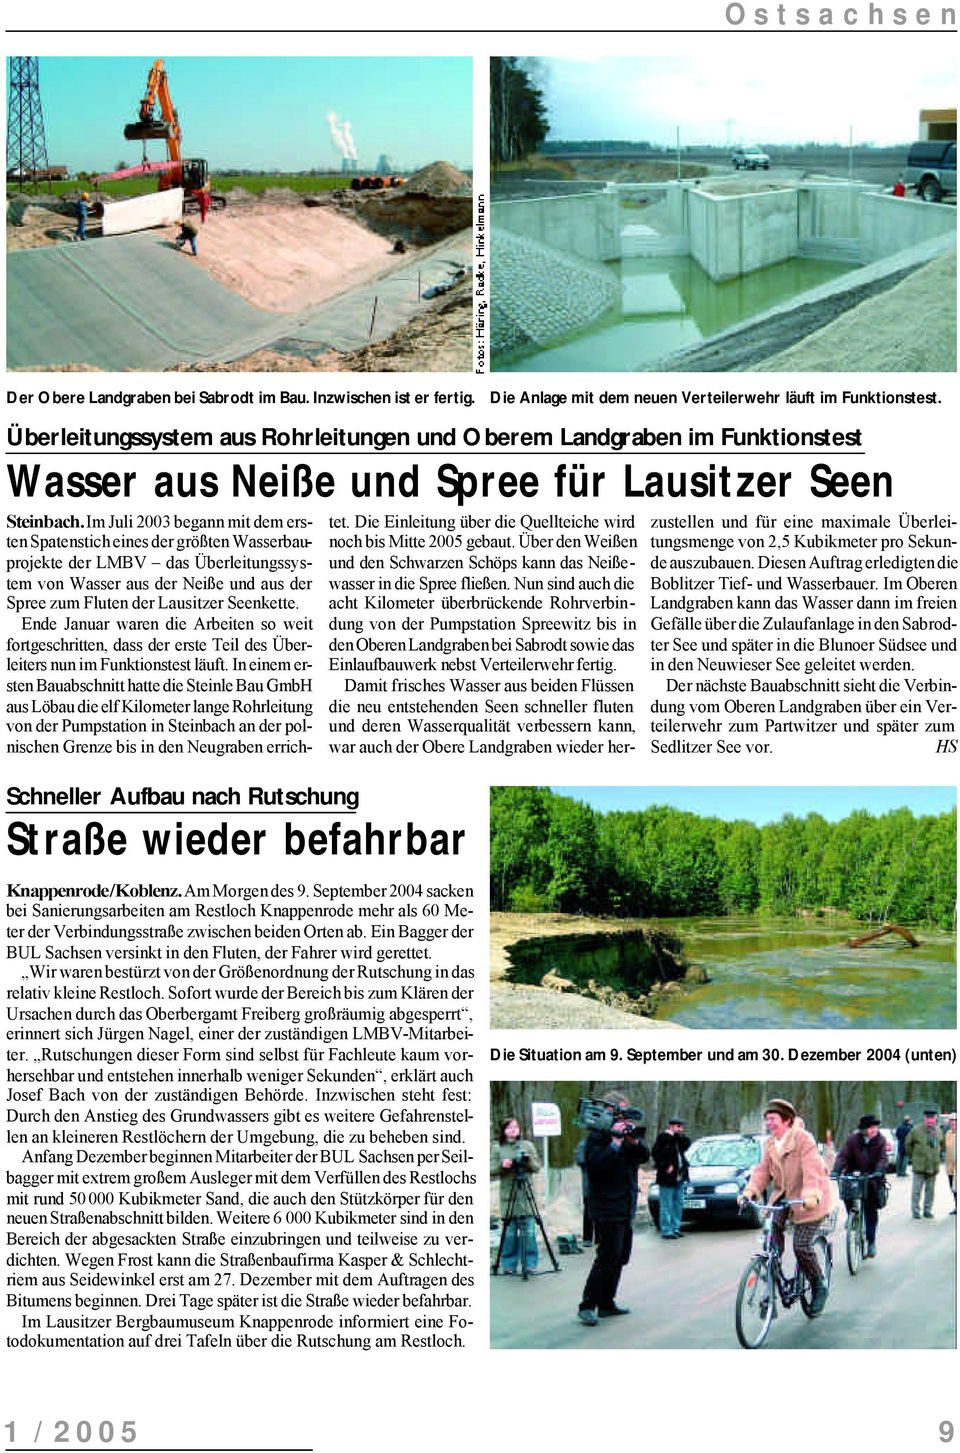 Im Juli 2003 begann mit dem ersten Spatenstich eines der größten Wasserbauprojekte der LMBV das Überleitungssystem von Wasser aus der Neiße und aus der Spree zum Fluten der Lausitzer Seenkette.